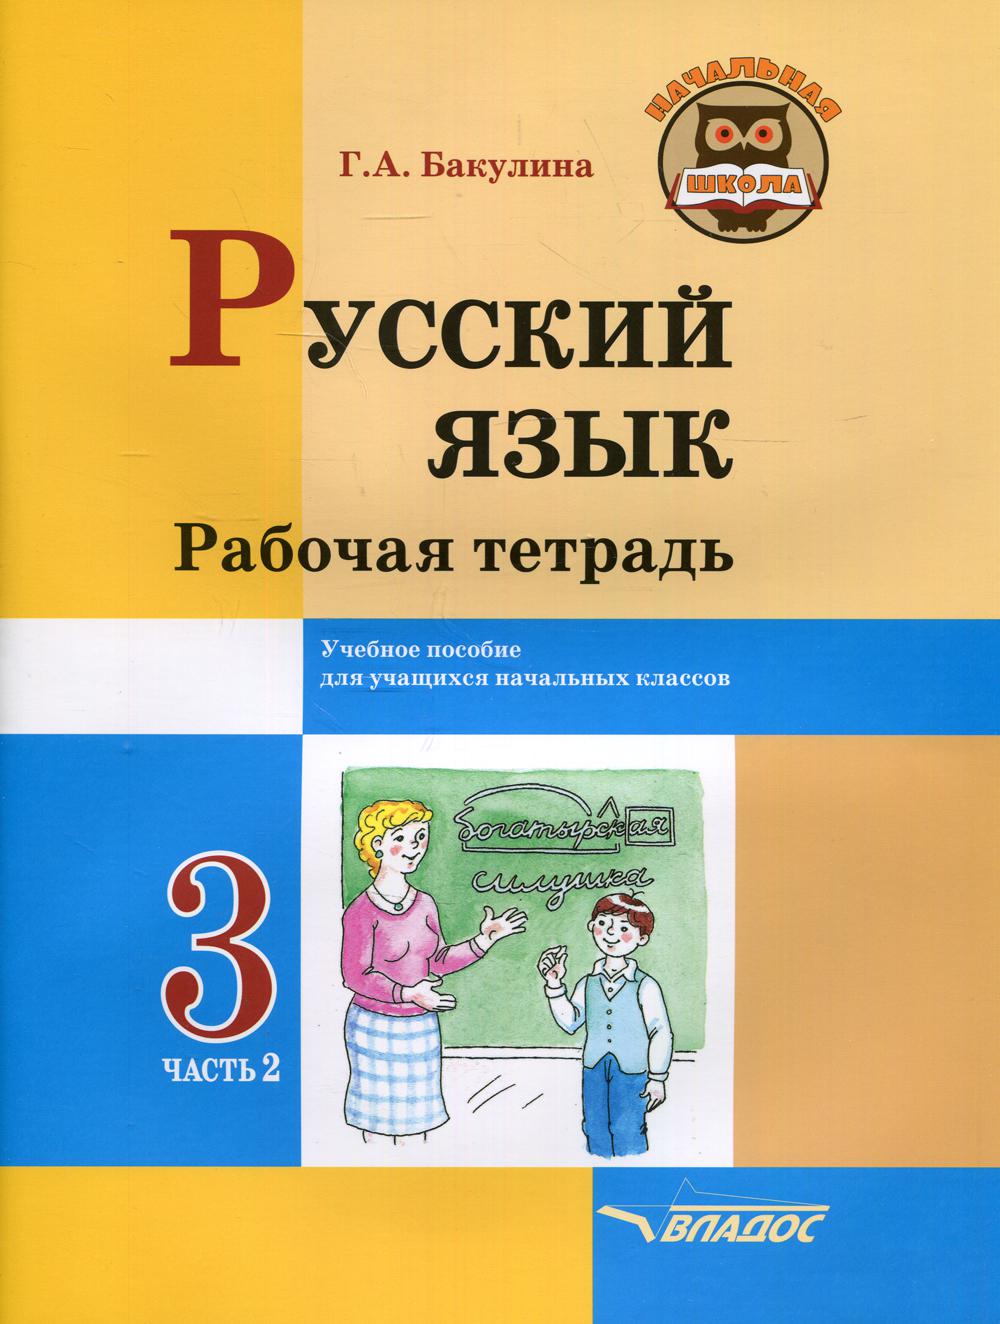 фото Книга русский язык. рабочая тетрадь. 3 класс владос